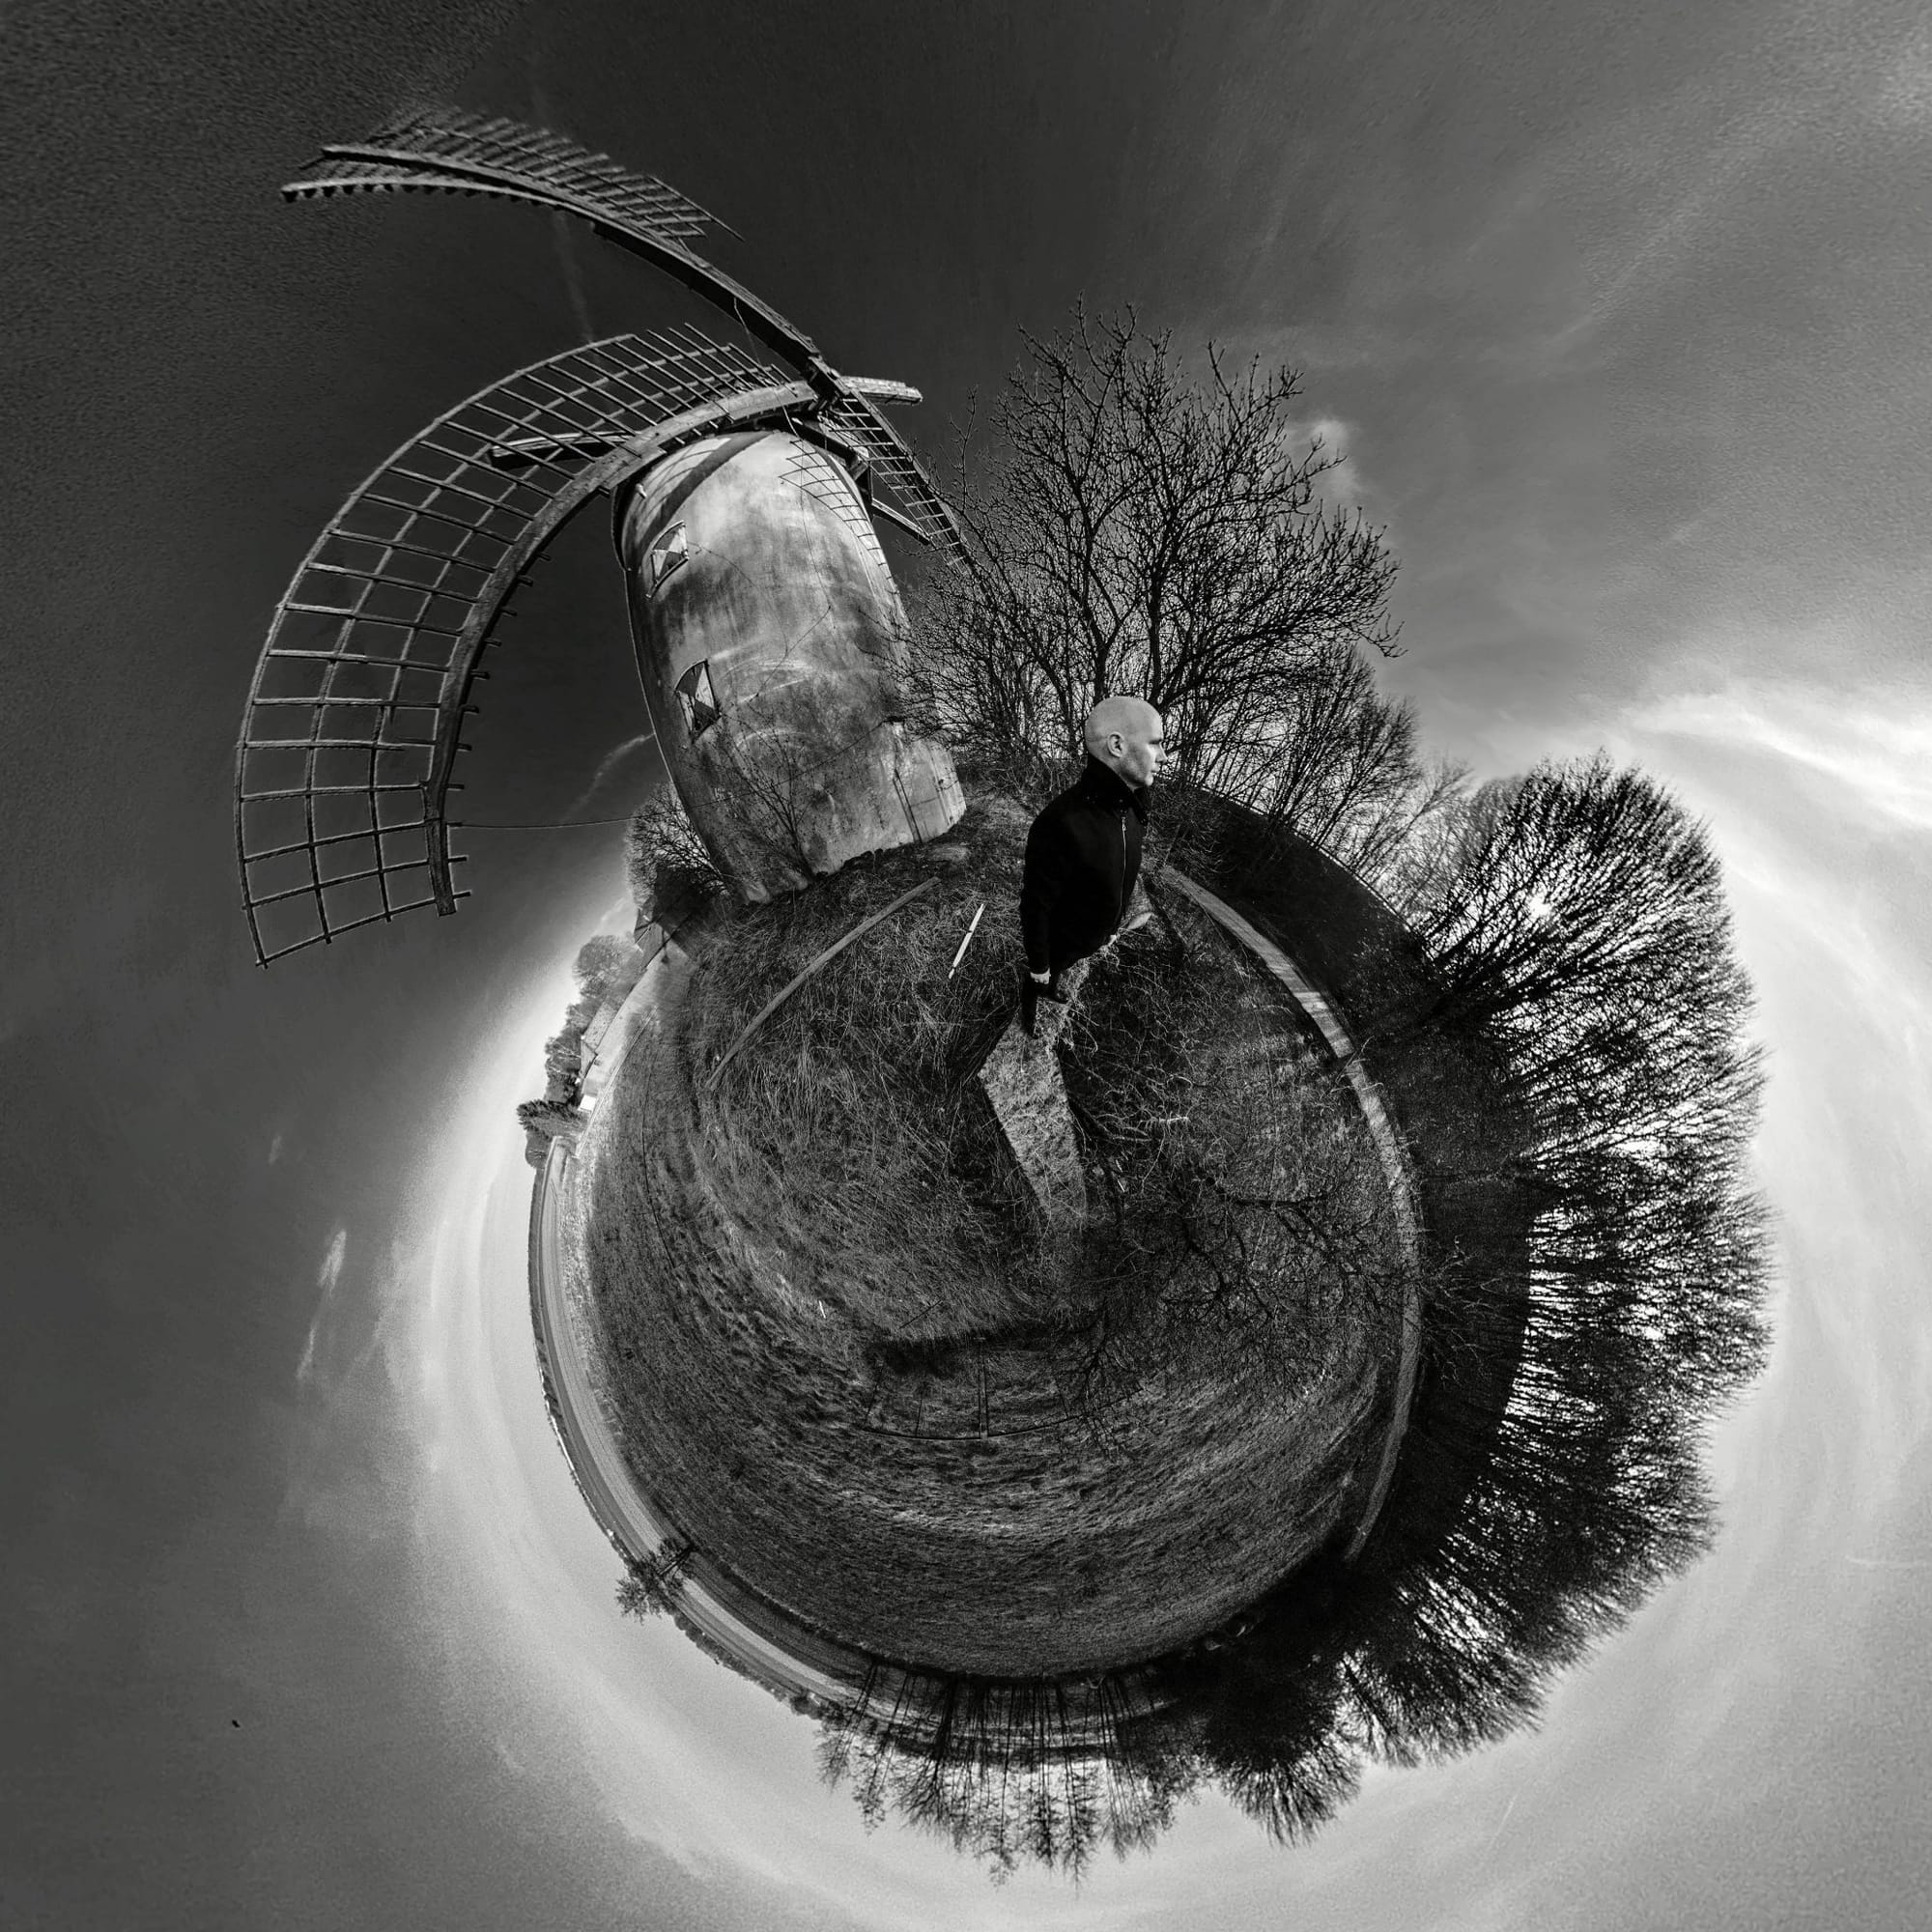 Jens steht in einem verlassenen Dorf, hinter ihm ist eine alte Windmühle zu sehen. Das Bild ist von der Mitte aus aufgenommen und simuliert eine Art Fischaugenoptik.